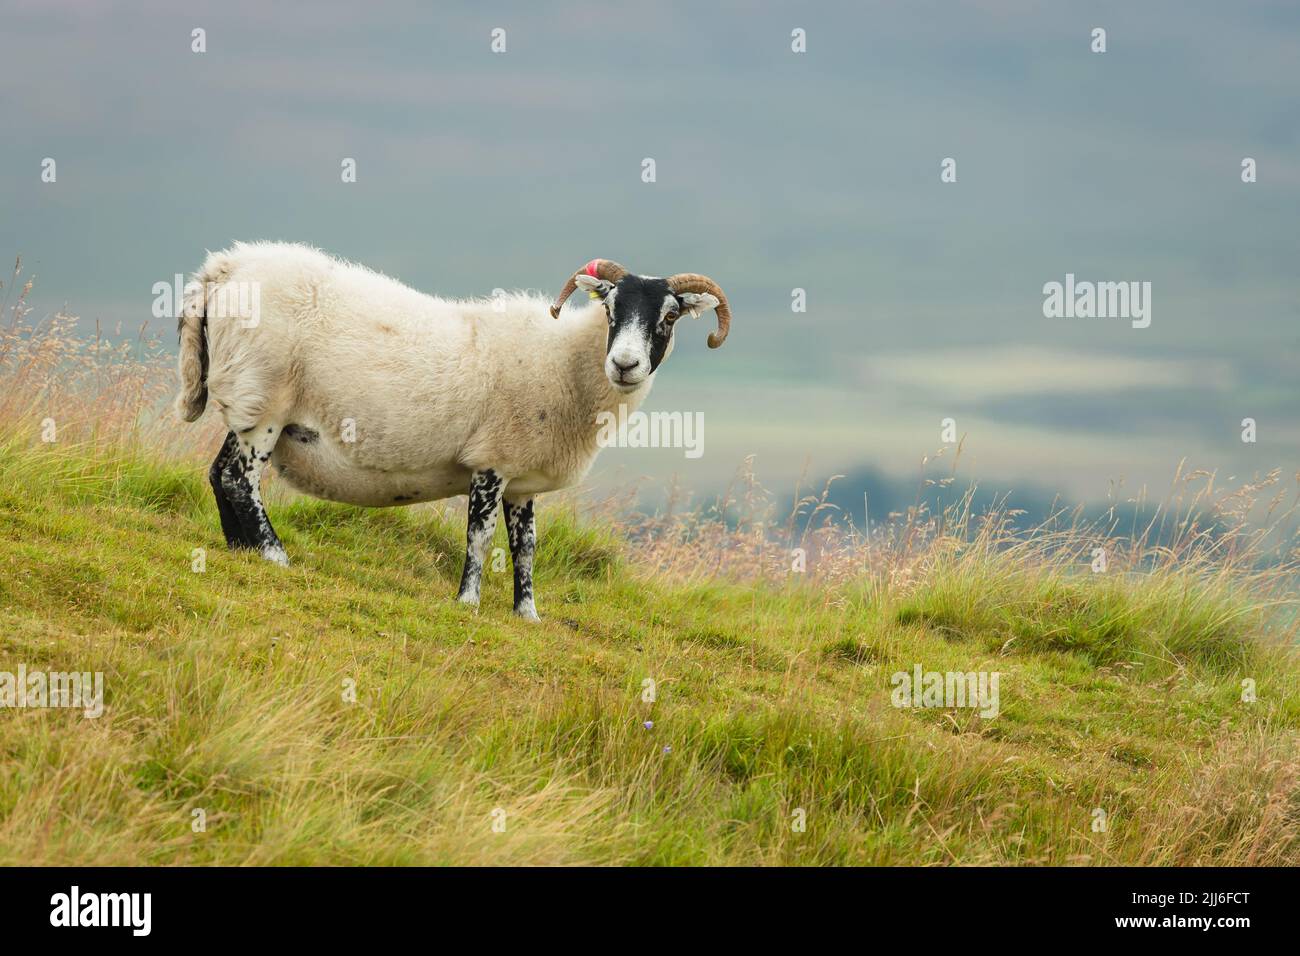 Das schottische Blackface Swaledale-Mutterschafe, oder weibliche Schafe mit lockigen Hörnern und dickem Vlies, stand auf einer üppigen Sommerwiese in Swaledale, North Yorkshire. Fac Stockfoto